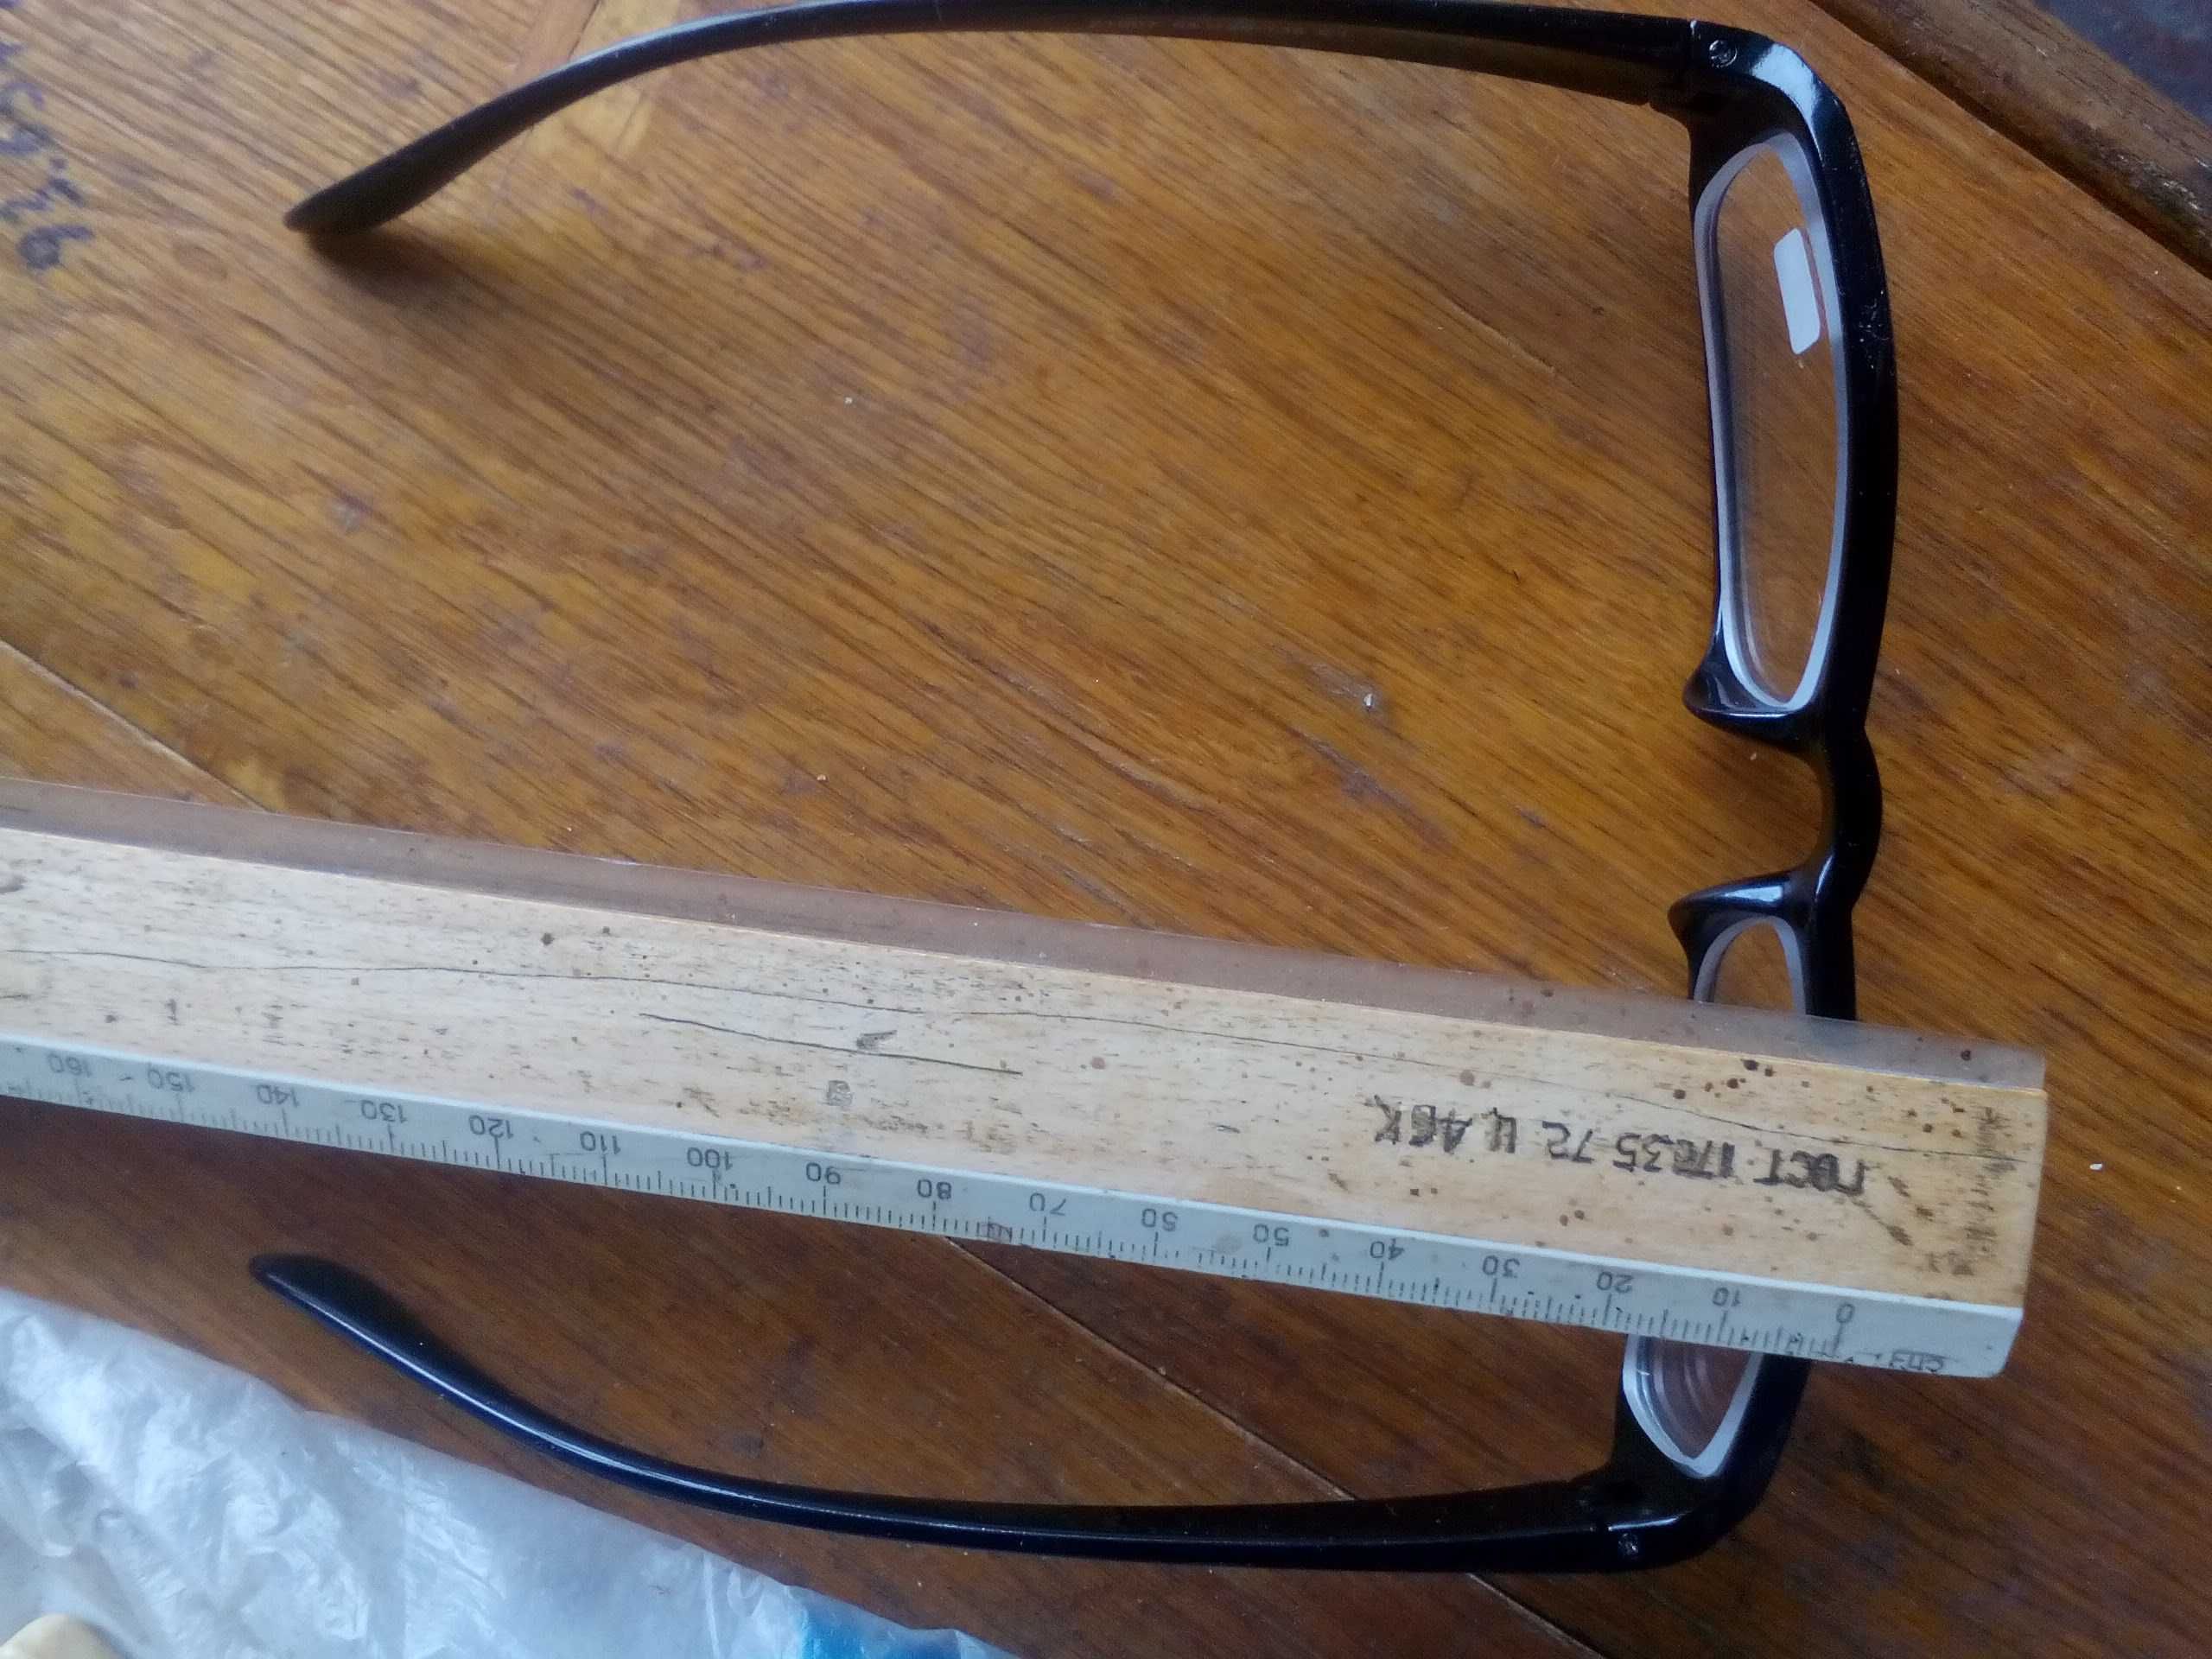 Нові окуляри.  -3 діоптрії.  Bідстань між центрами лінз = 62-64 мм.